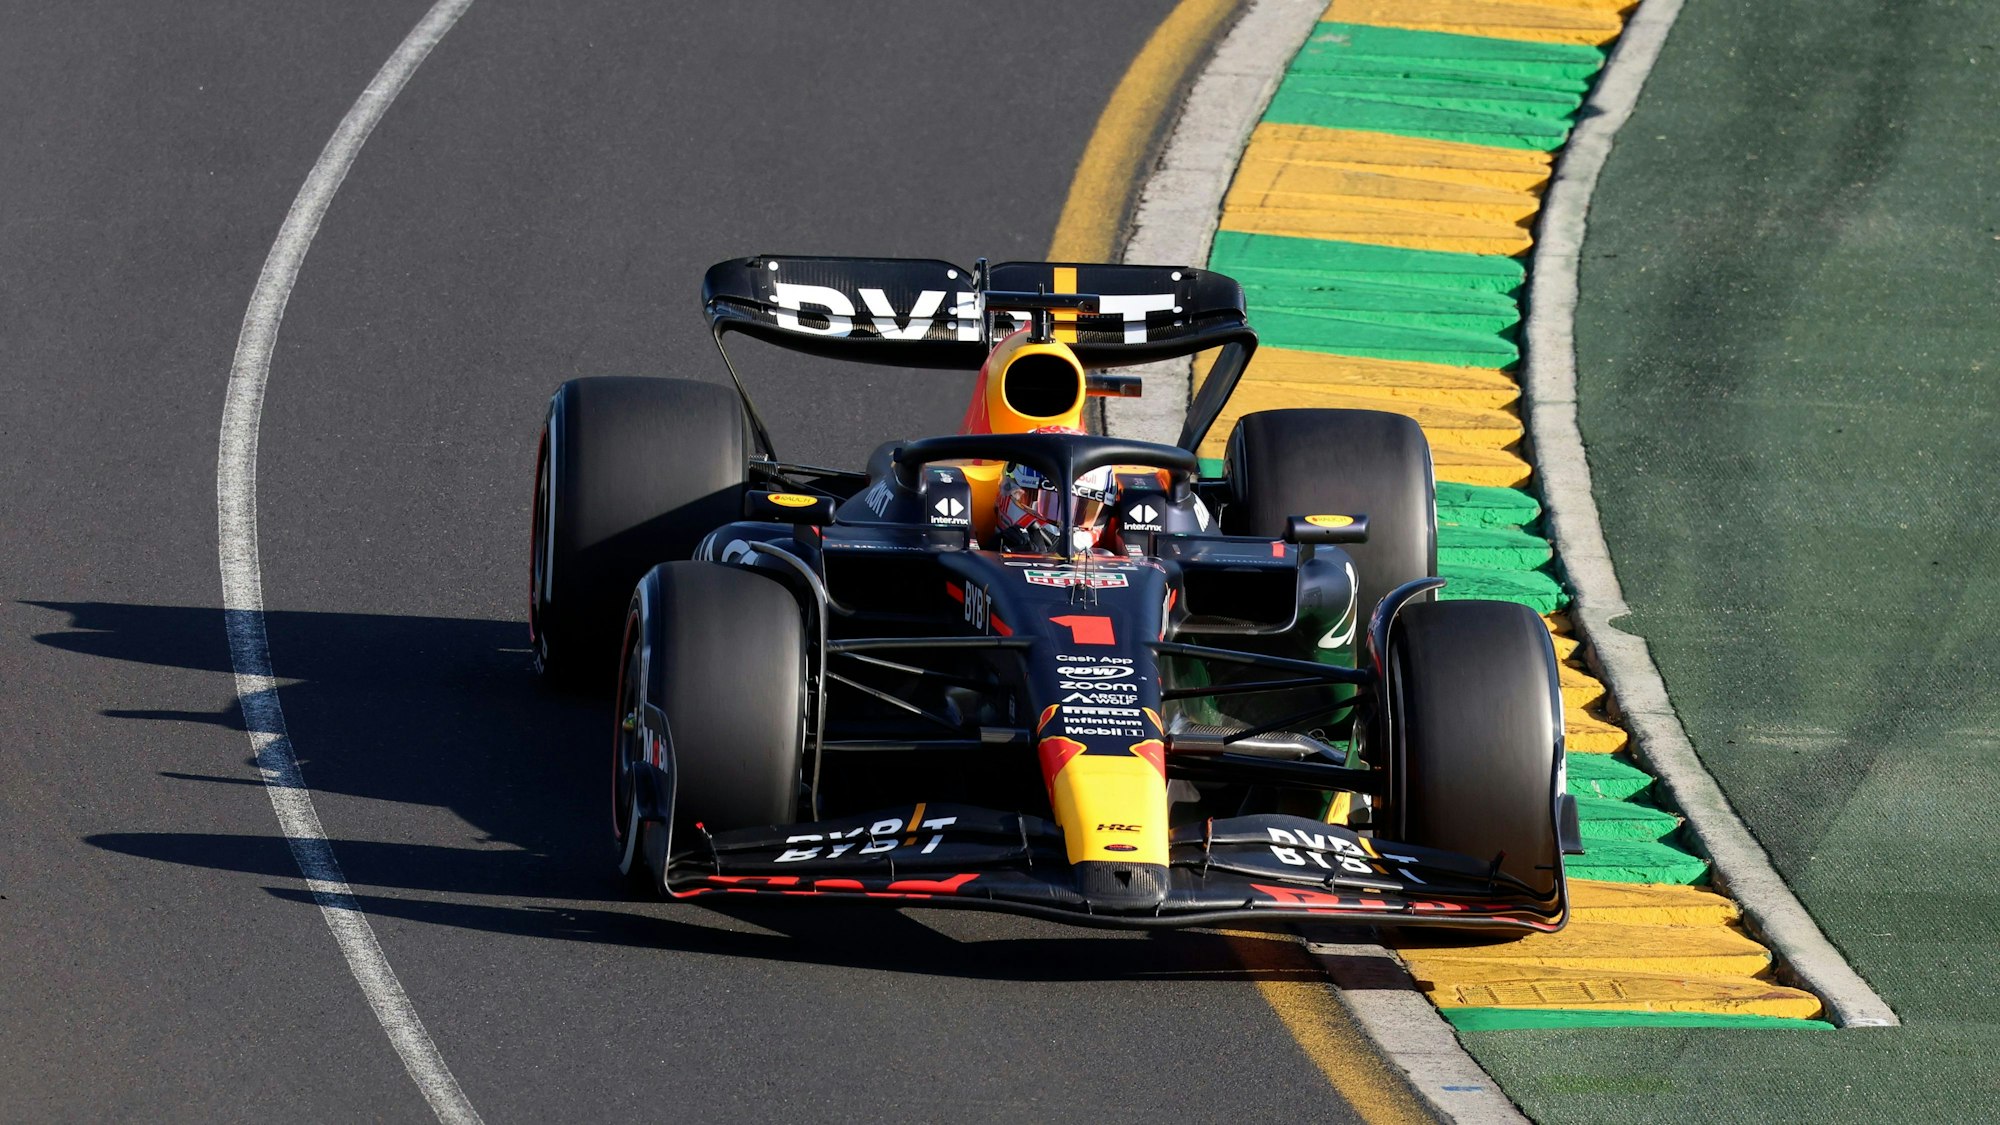 Max Verstappen fährt beim Rennen der Formel 1 dem Feld davon.